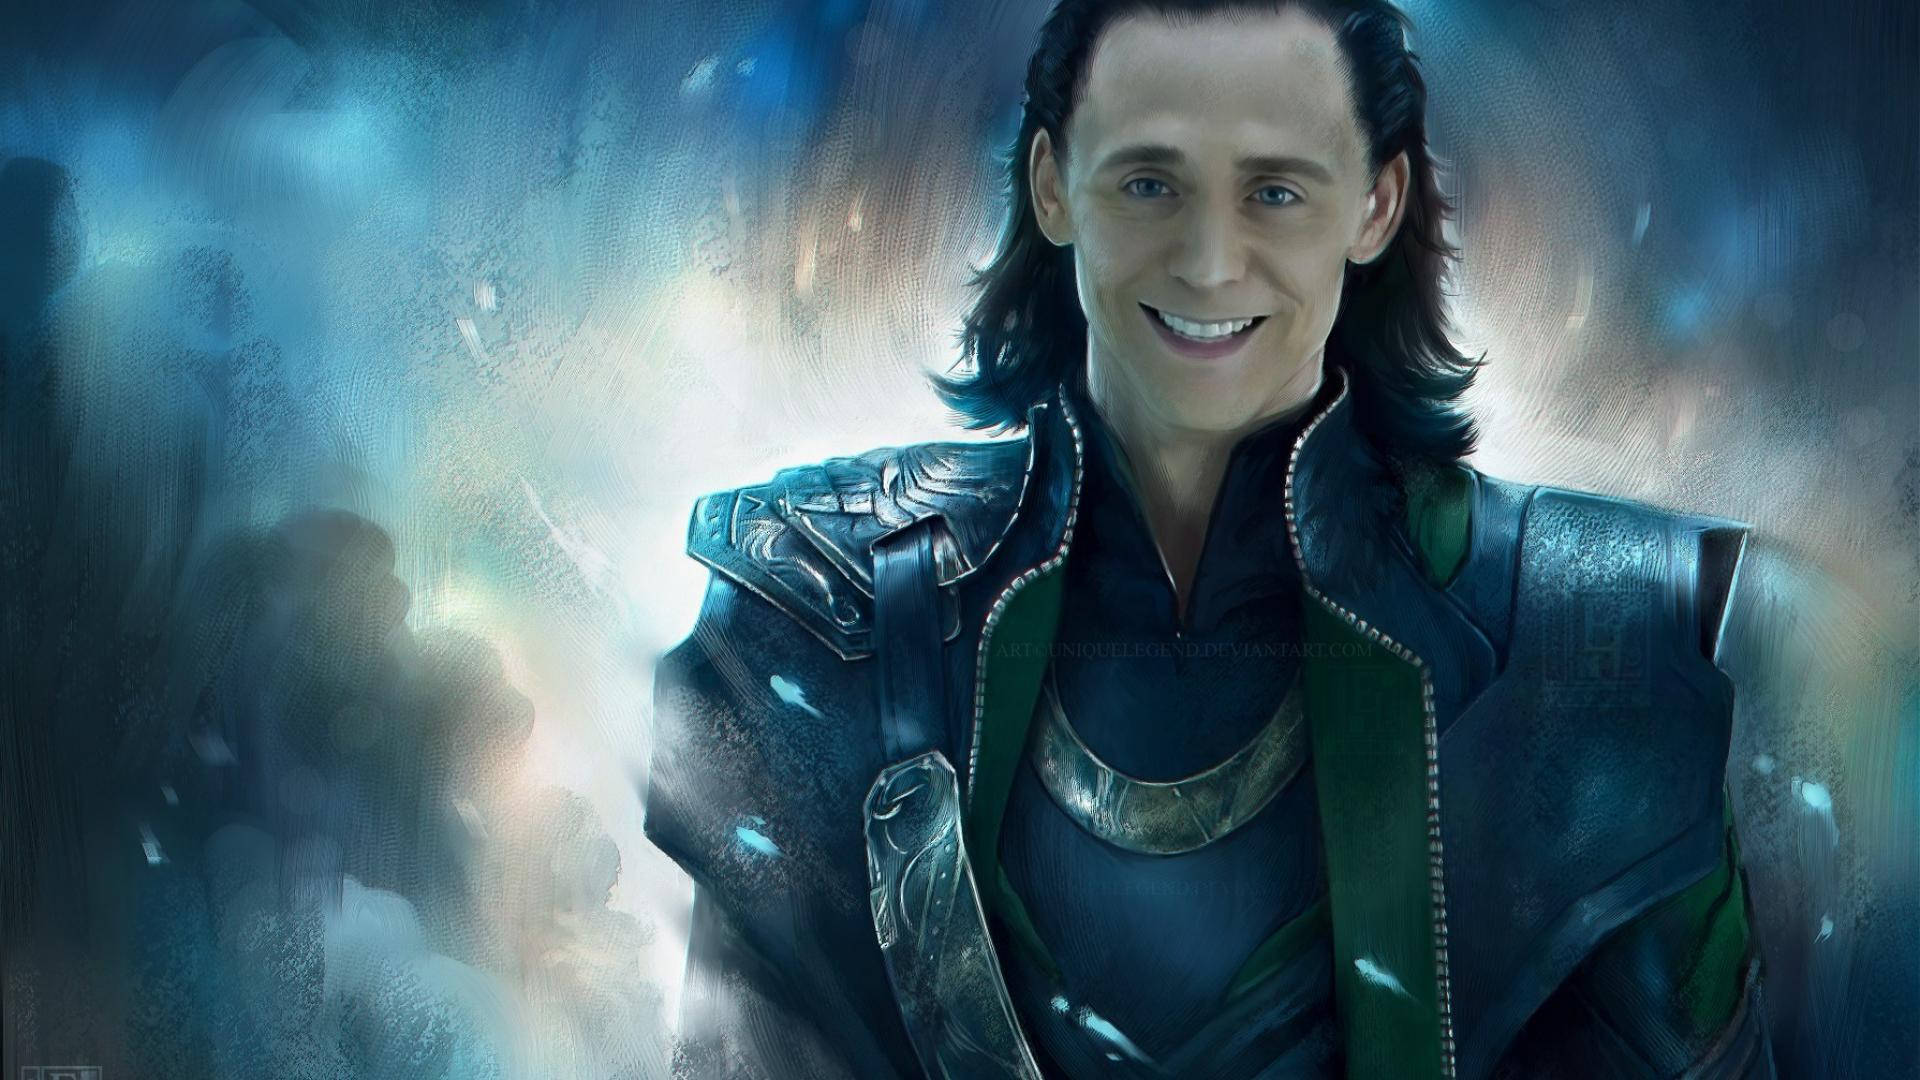 Smiling Loki Pastel Artwork